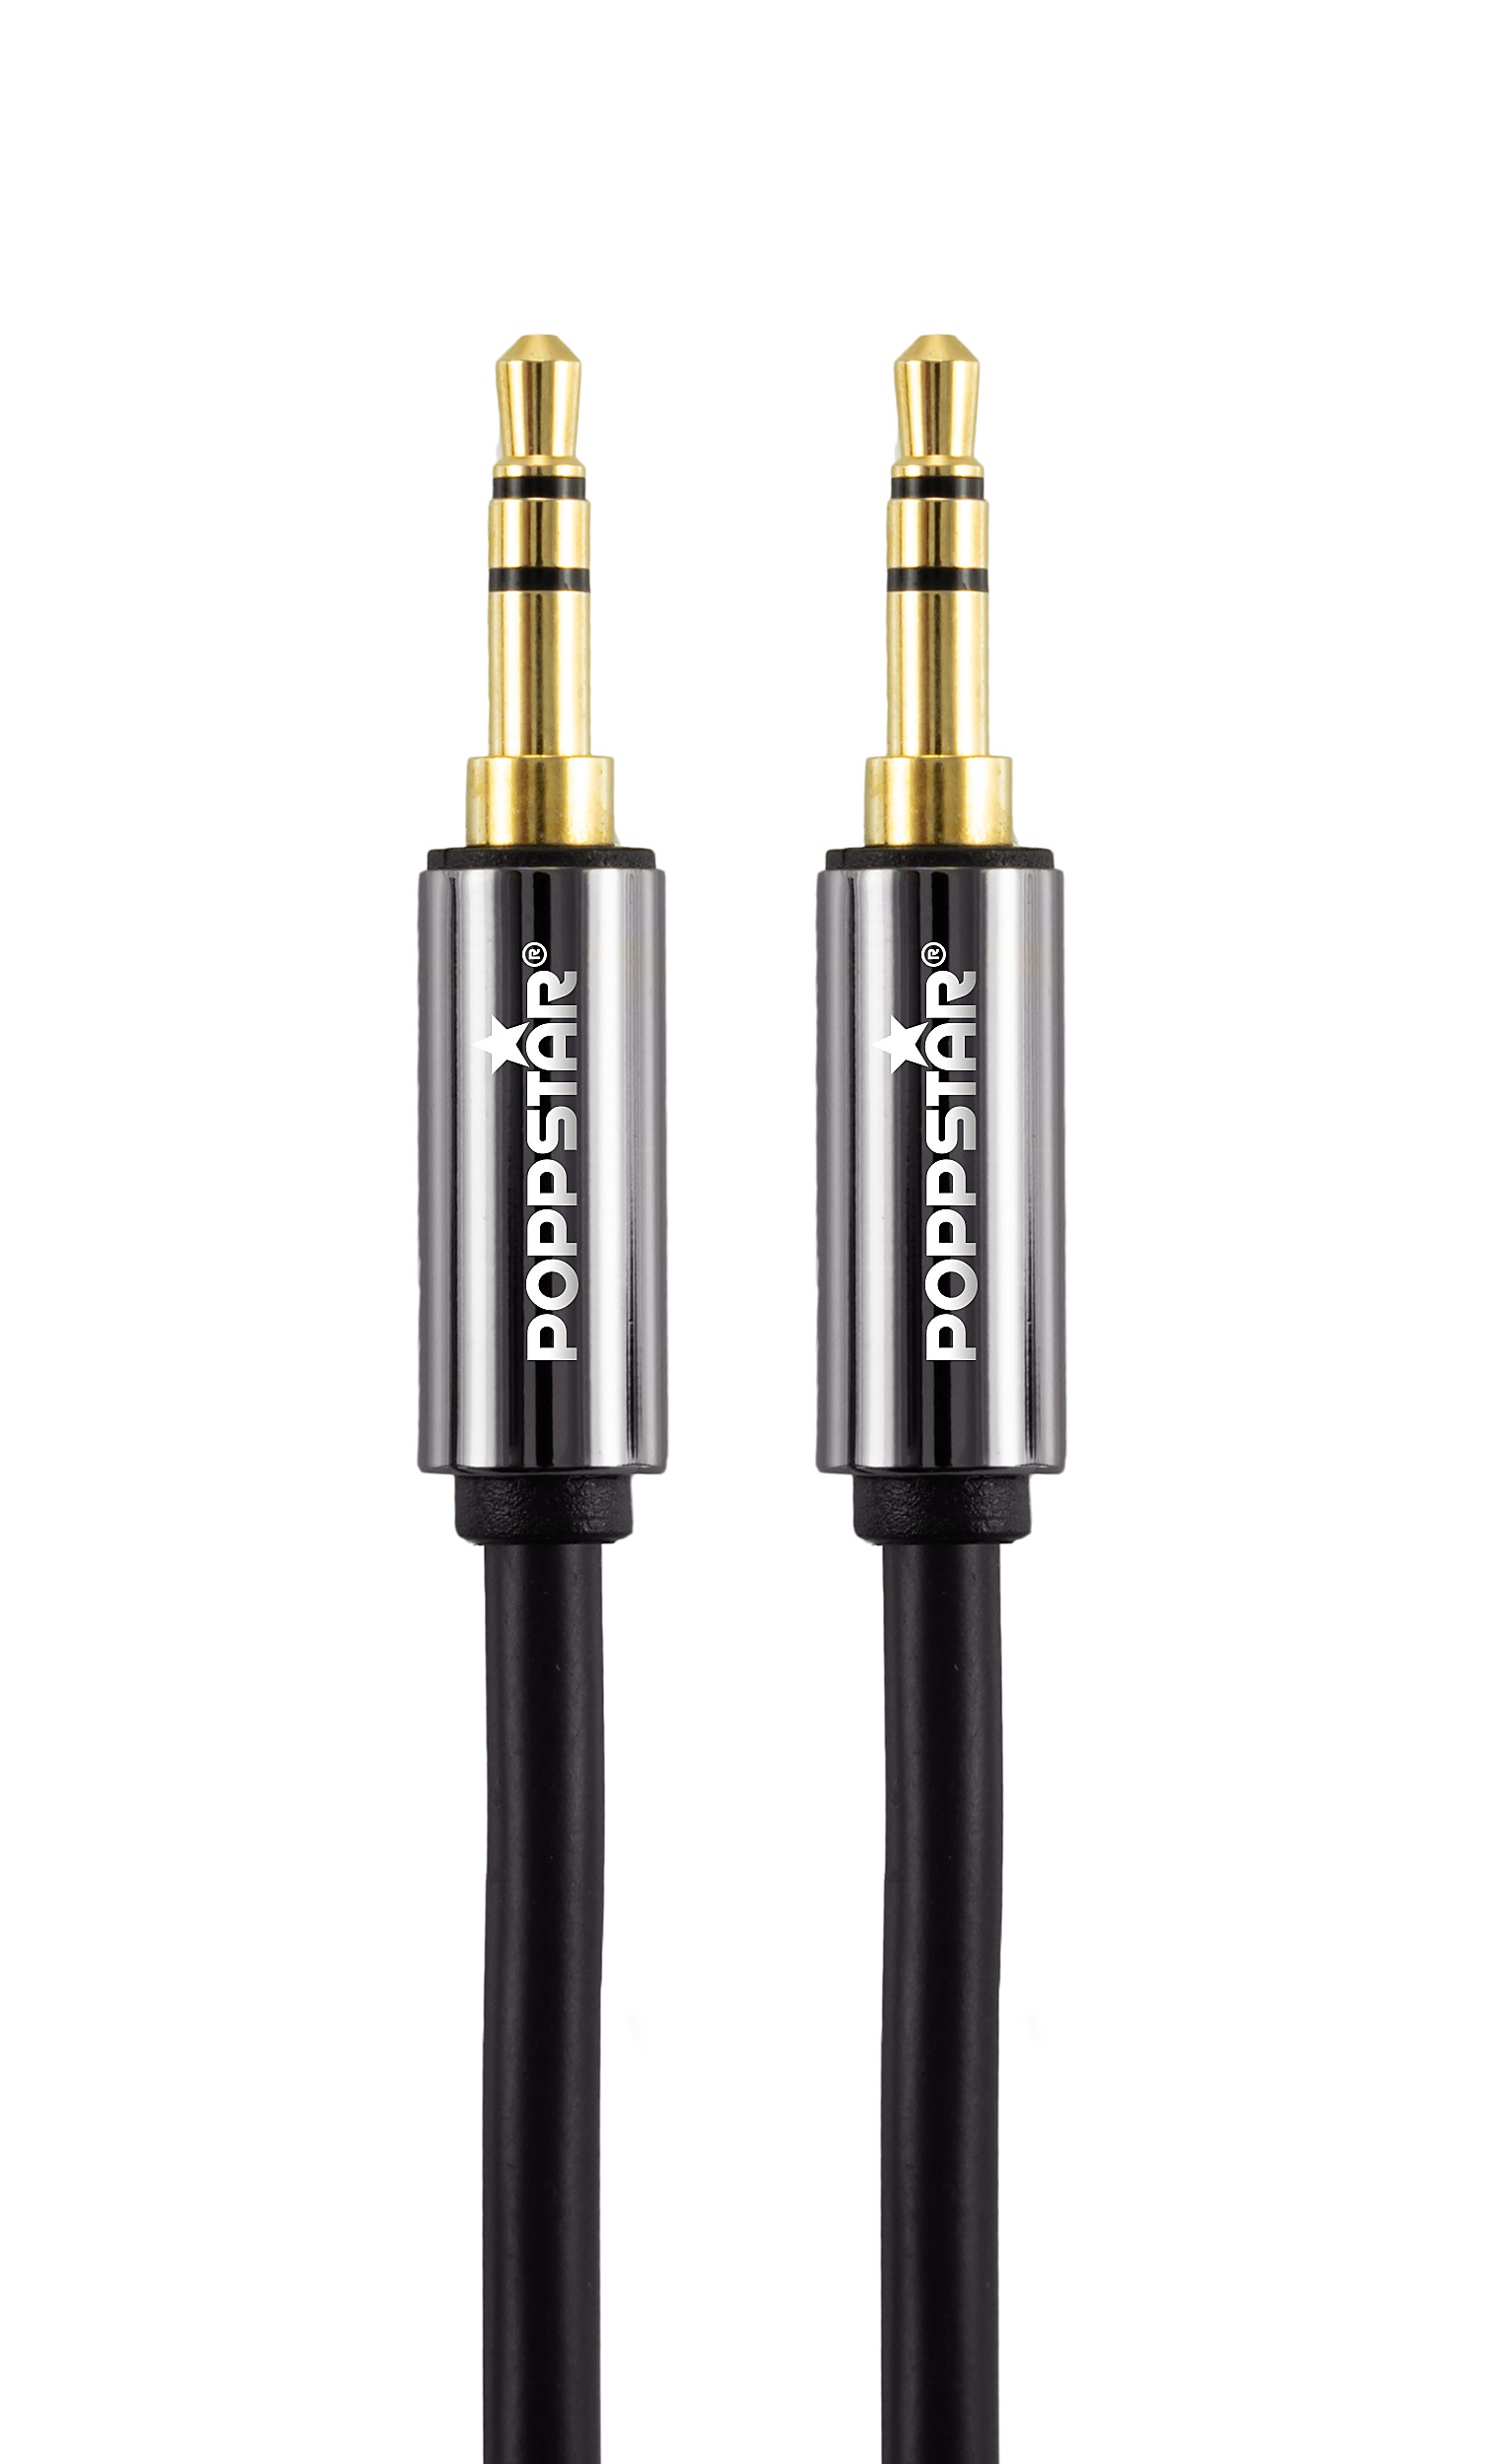 HQ Audio-Klinkenkabel 10 m mit Klinkenstecker 3,5 mm vergoldet